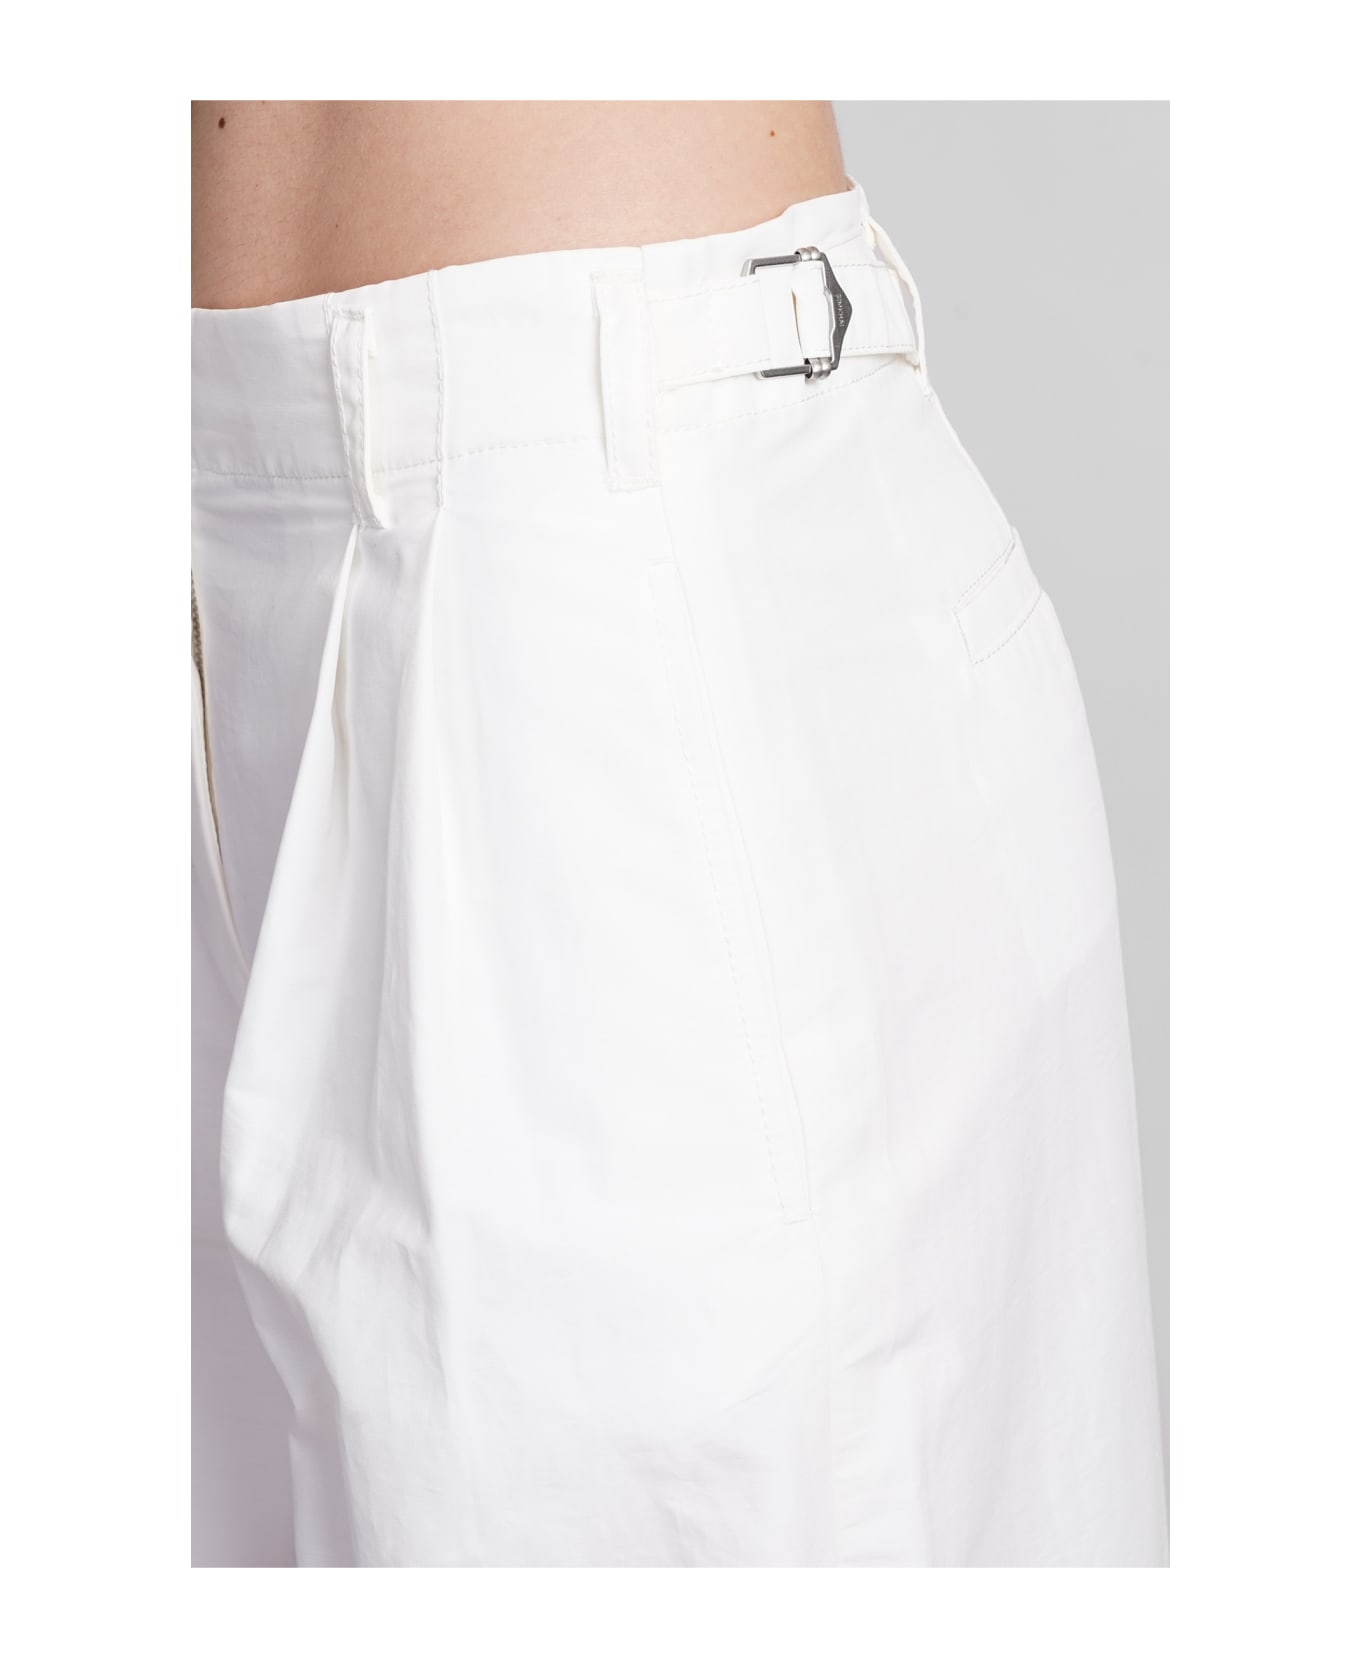 Simkhai Leroy Pants In White Cotton - white ボトムス